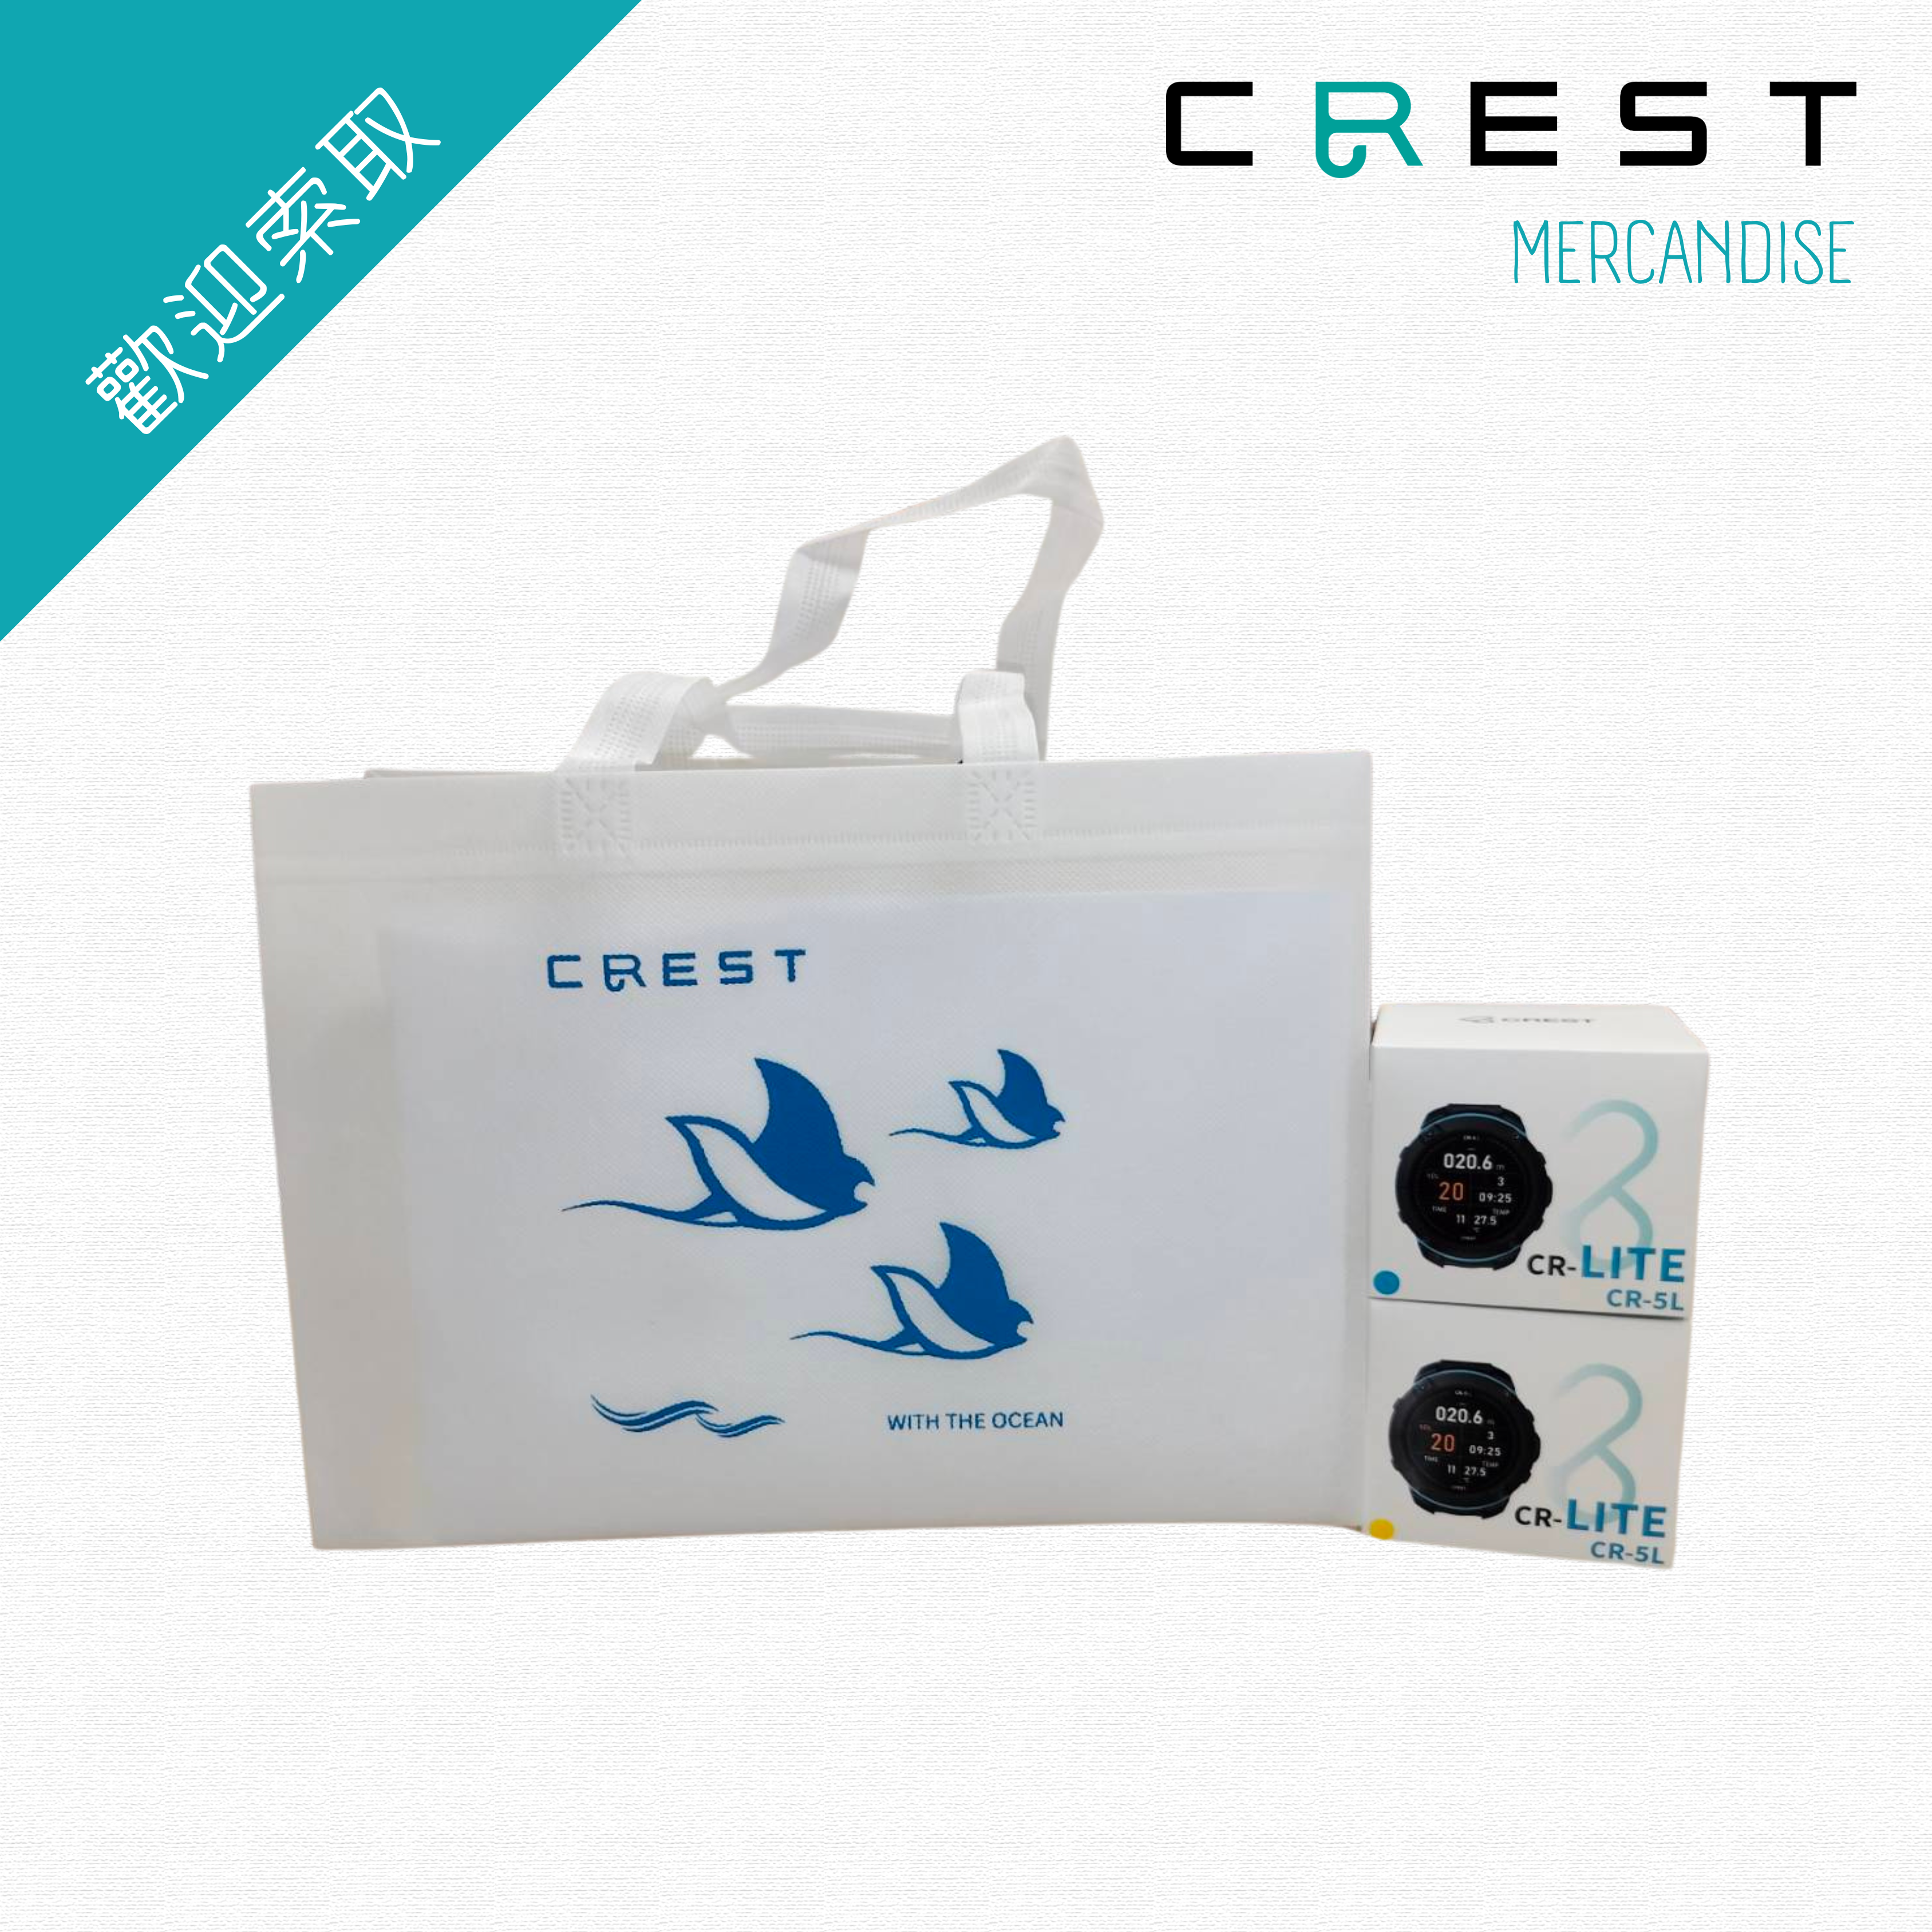 【品牌文宣】CREST 環保購物袋 - 魟魚(大)